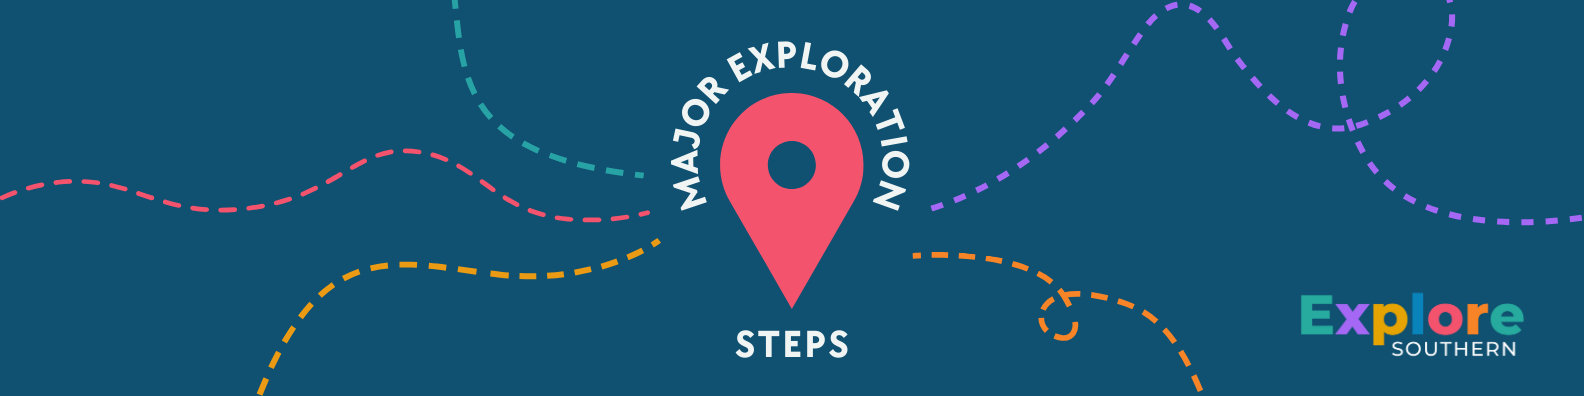 major exploration steps